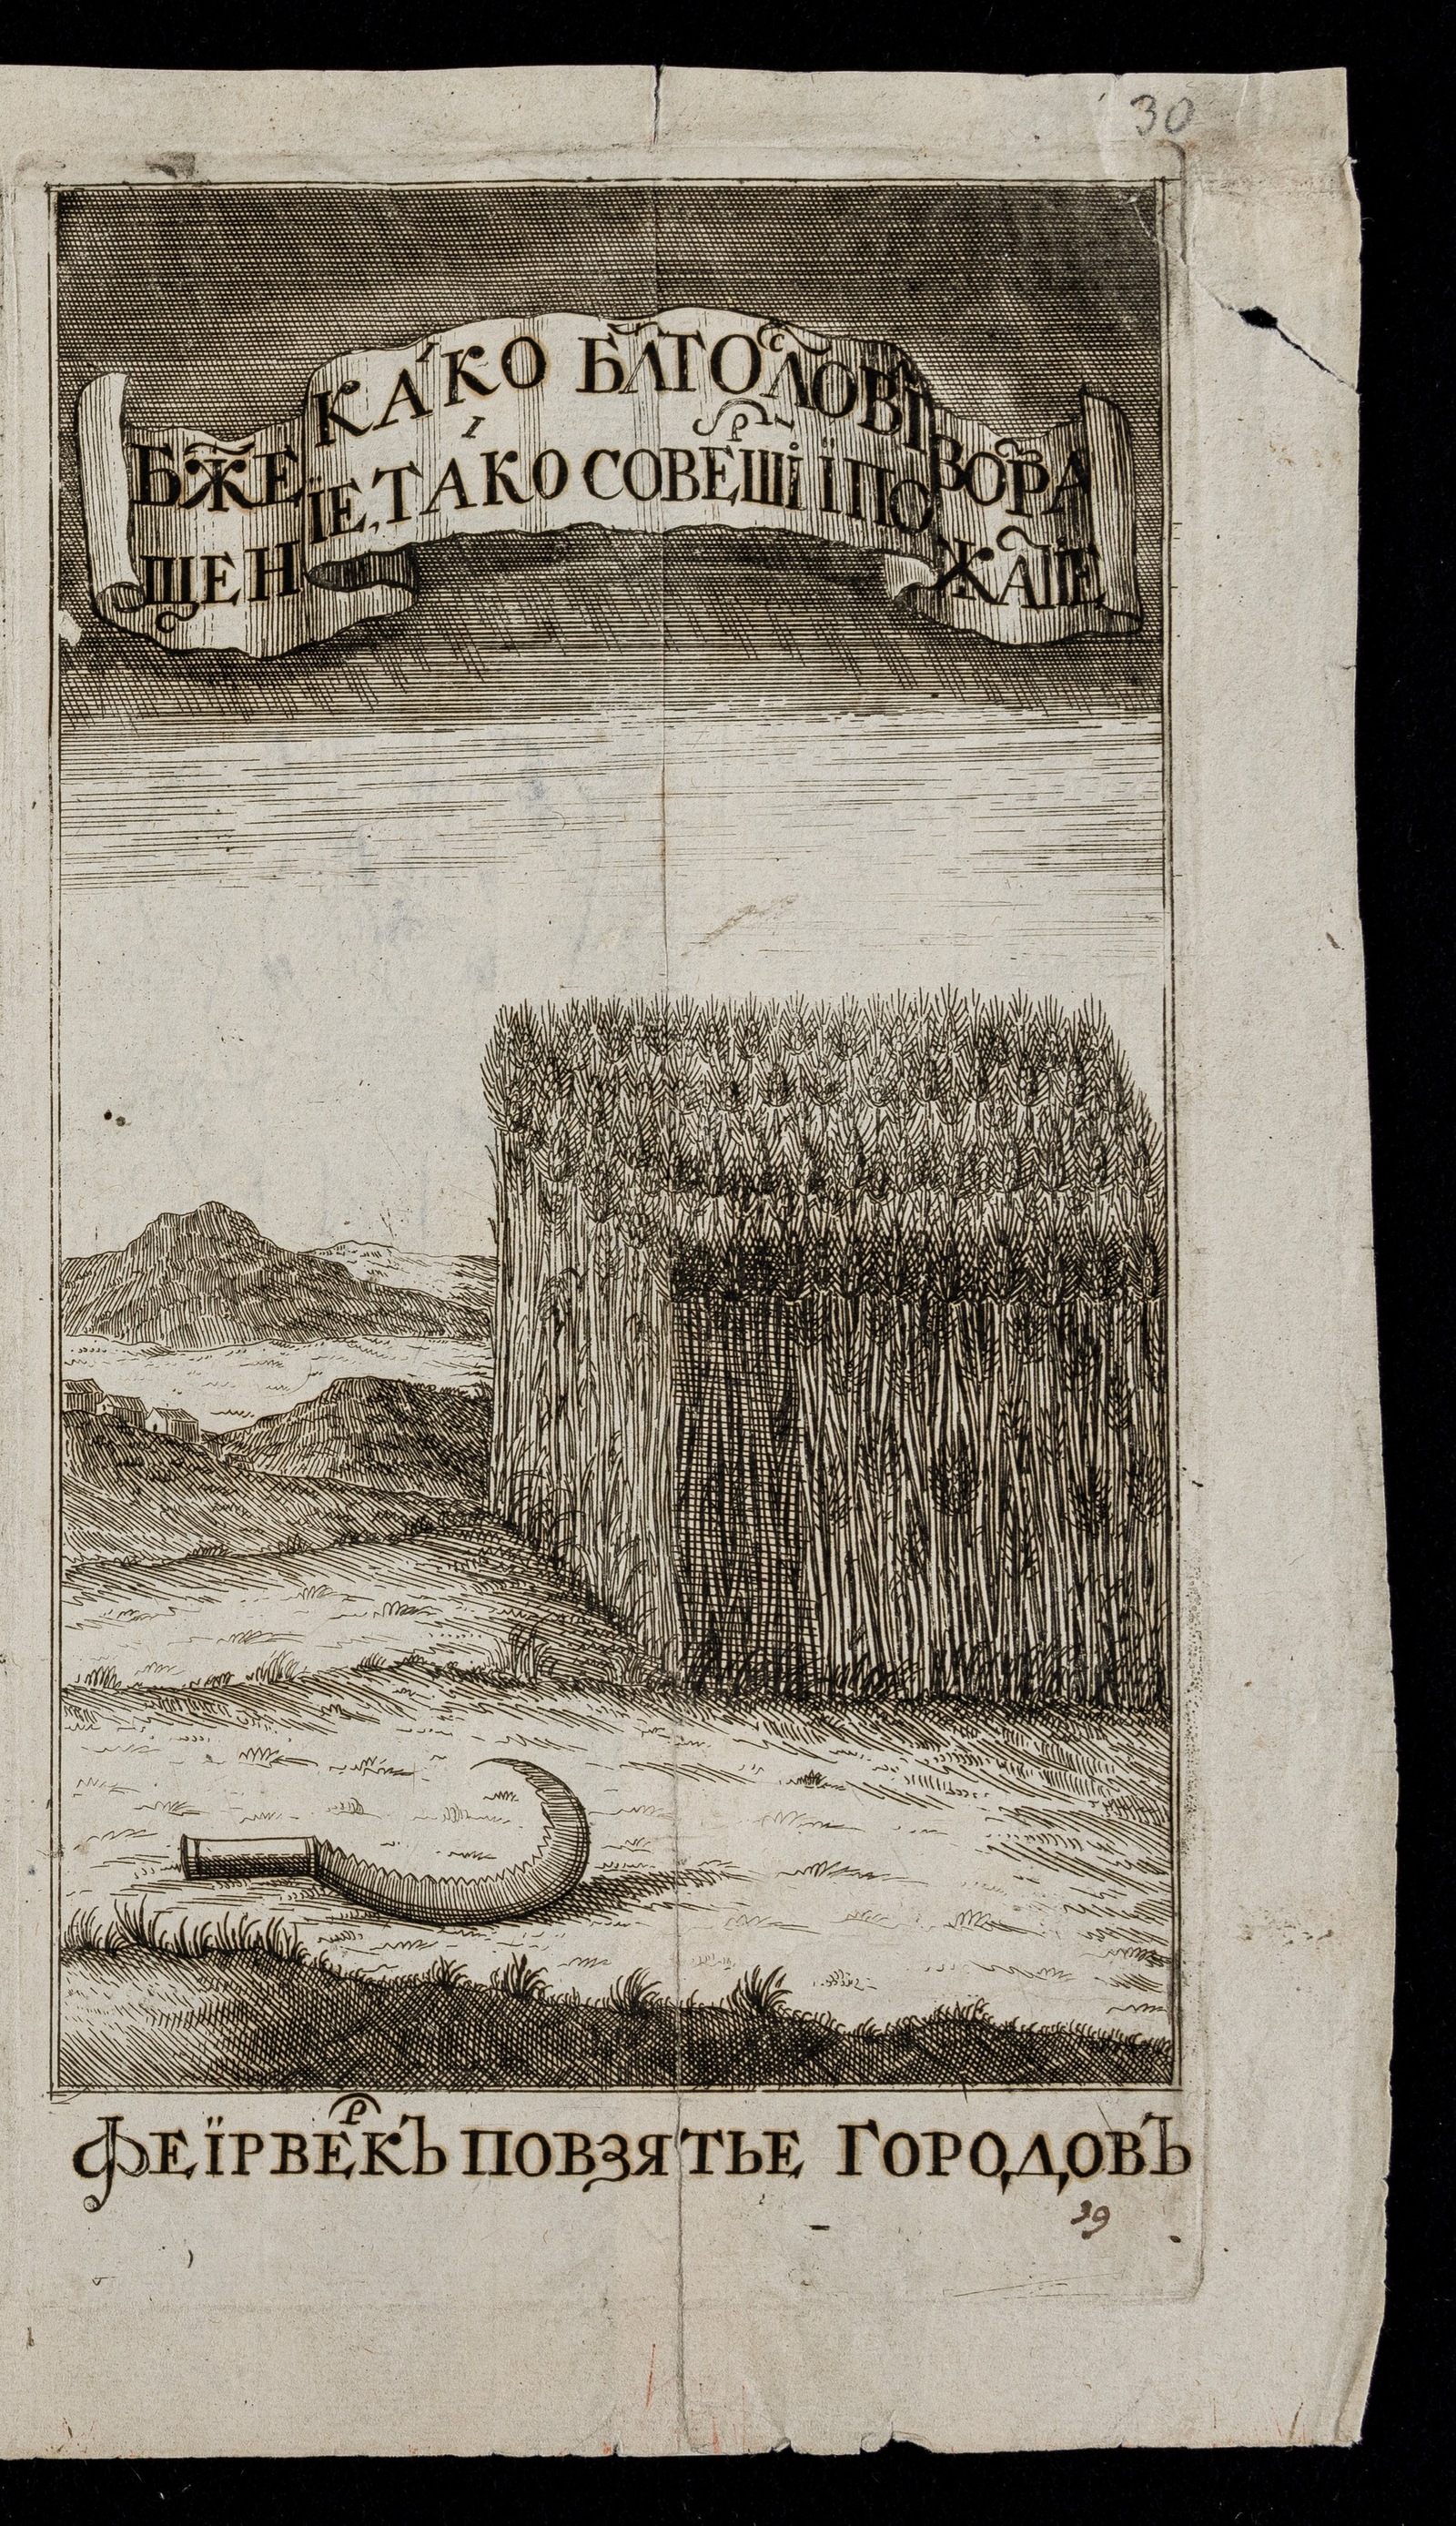 Изображение Транспарант фейерверка 1 января 1705 г. в Москве. Спелая пшеница и серп